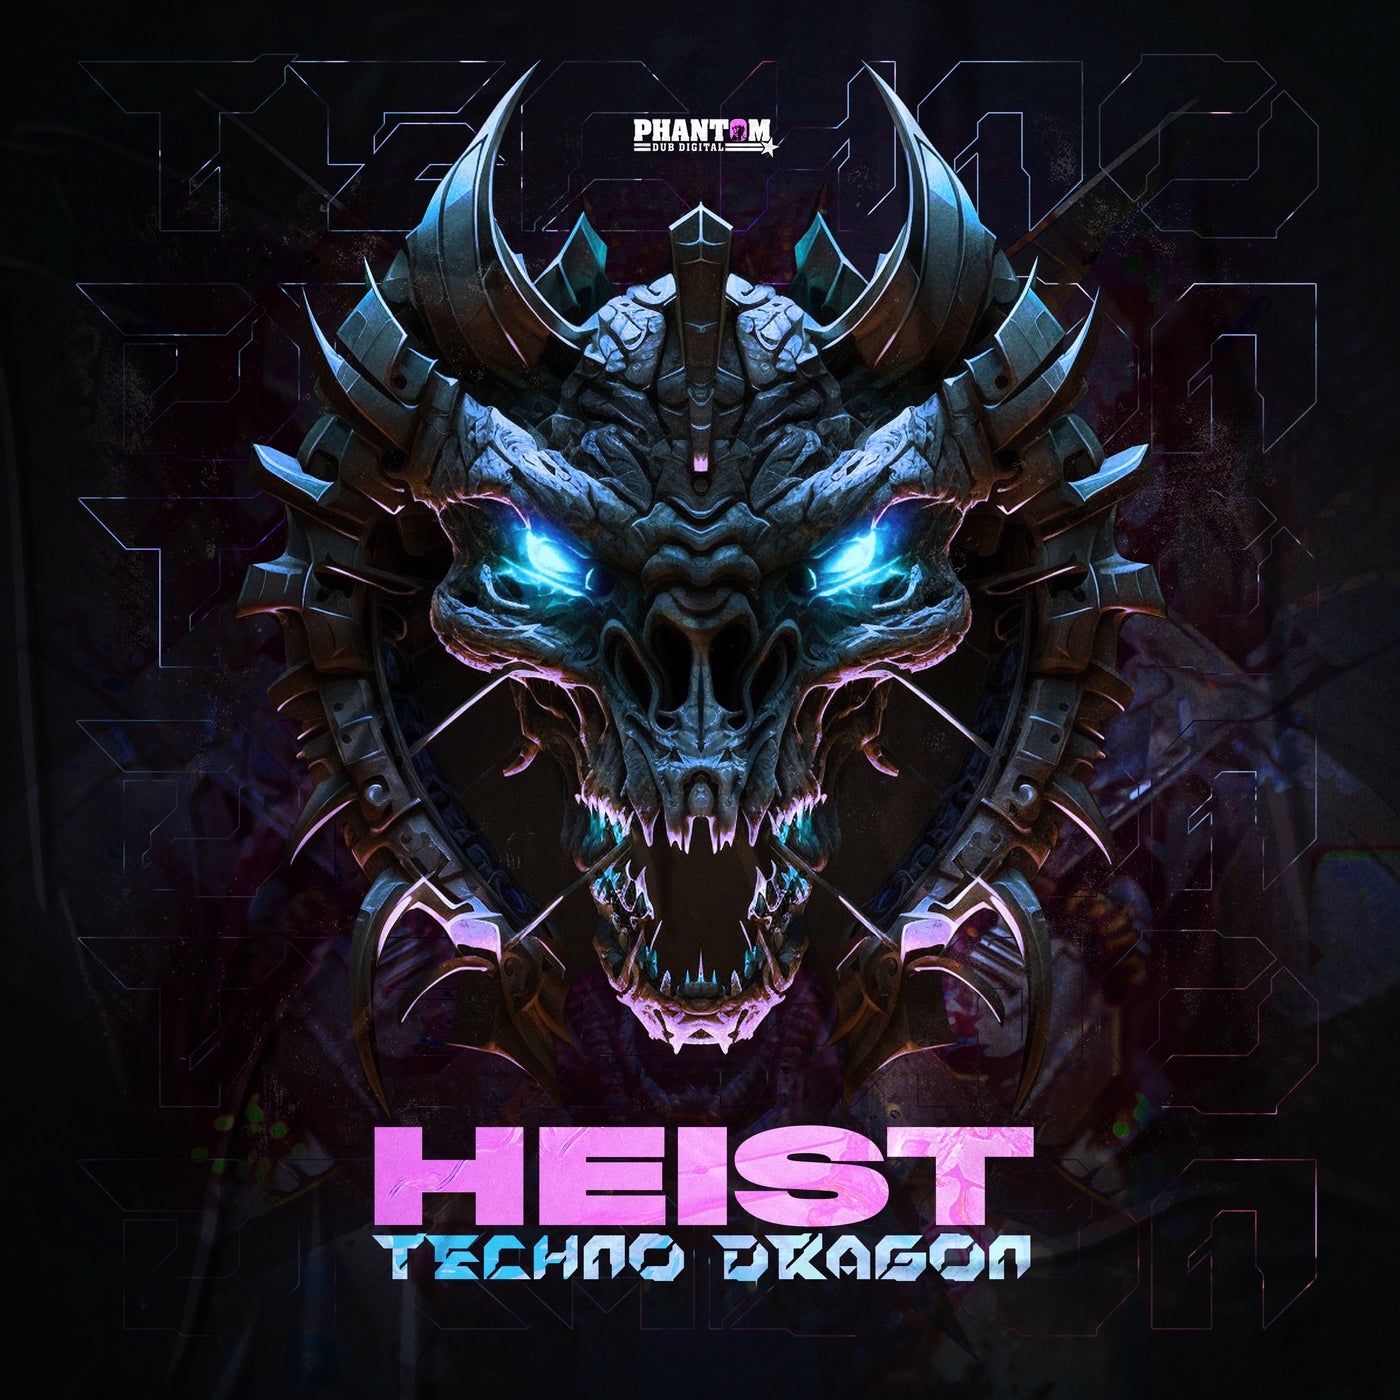 Techno Dragon